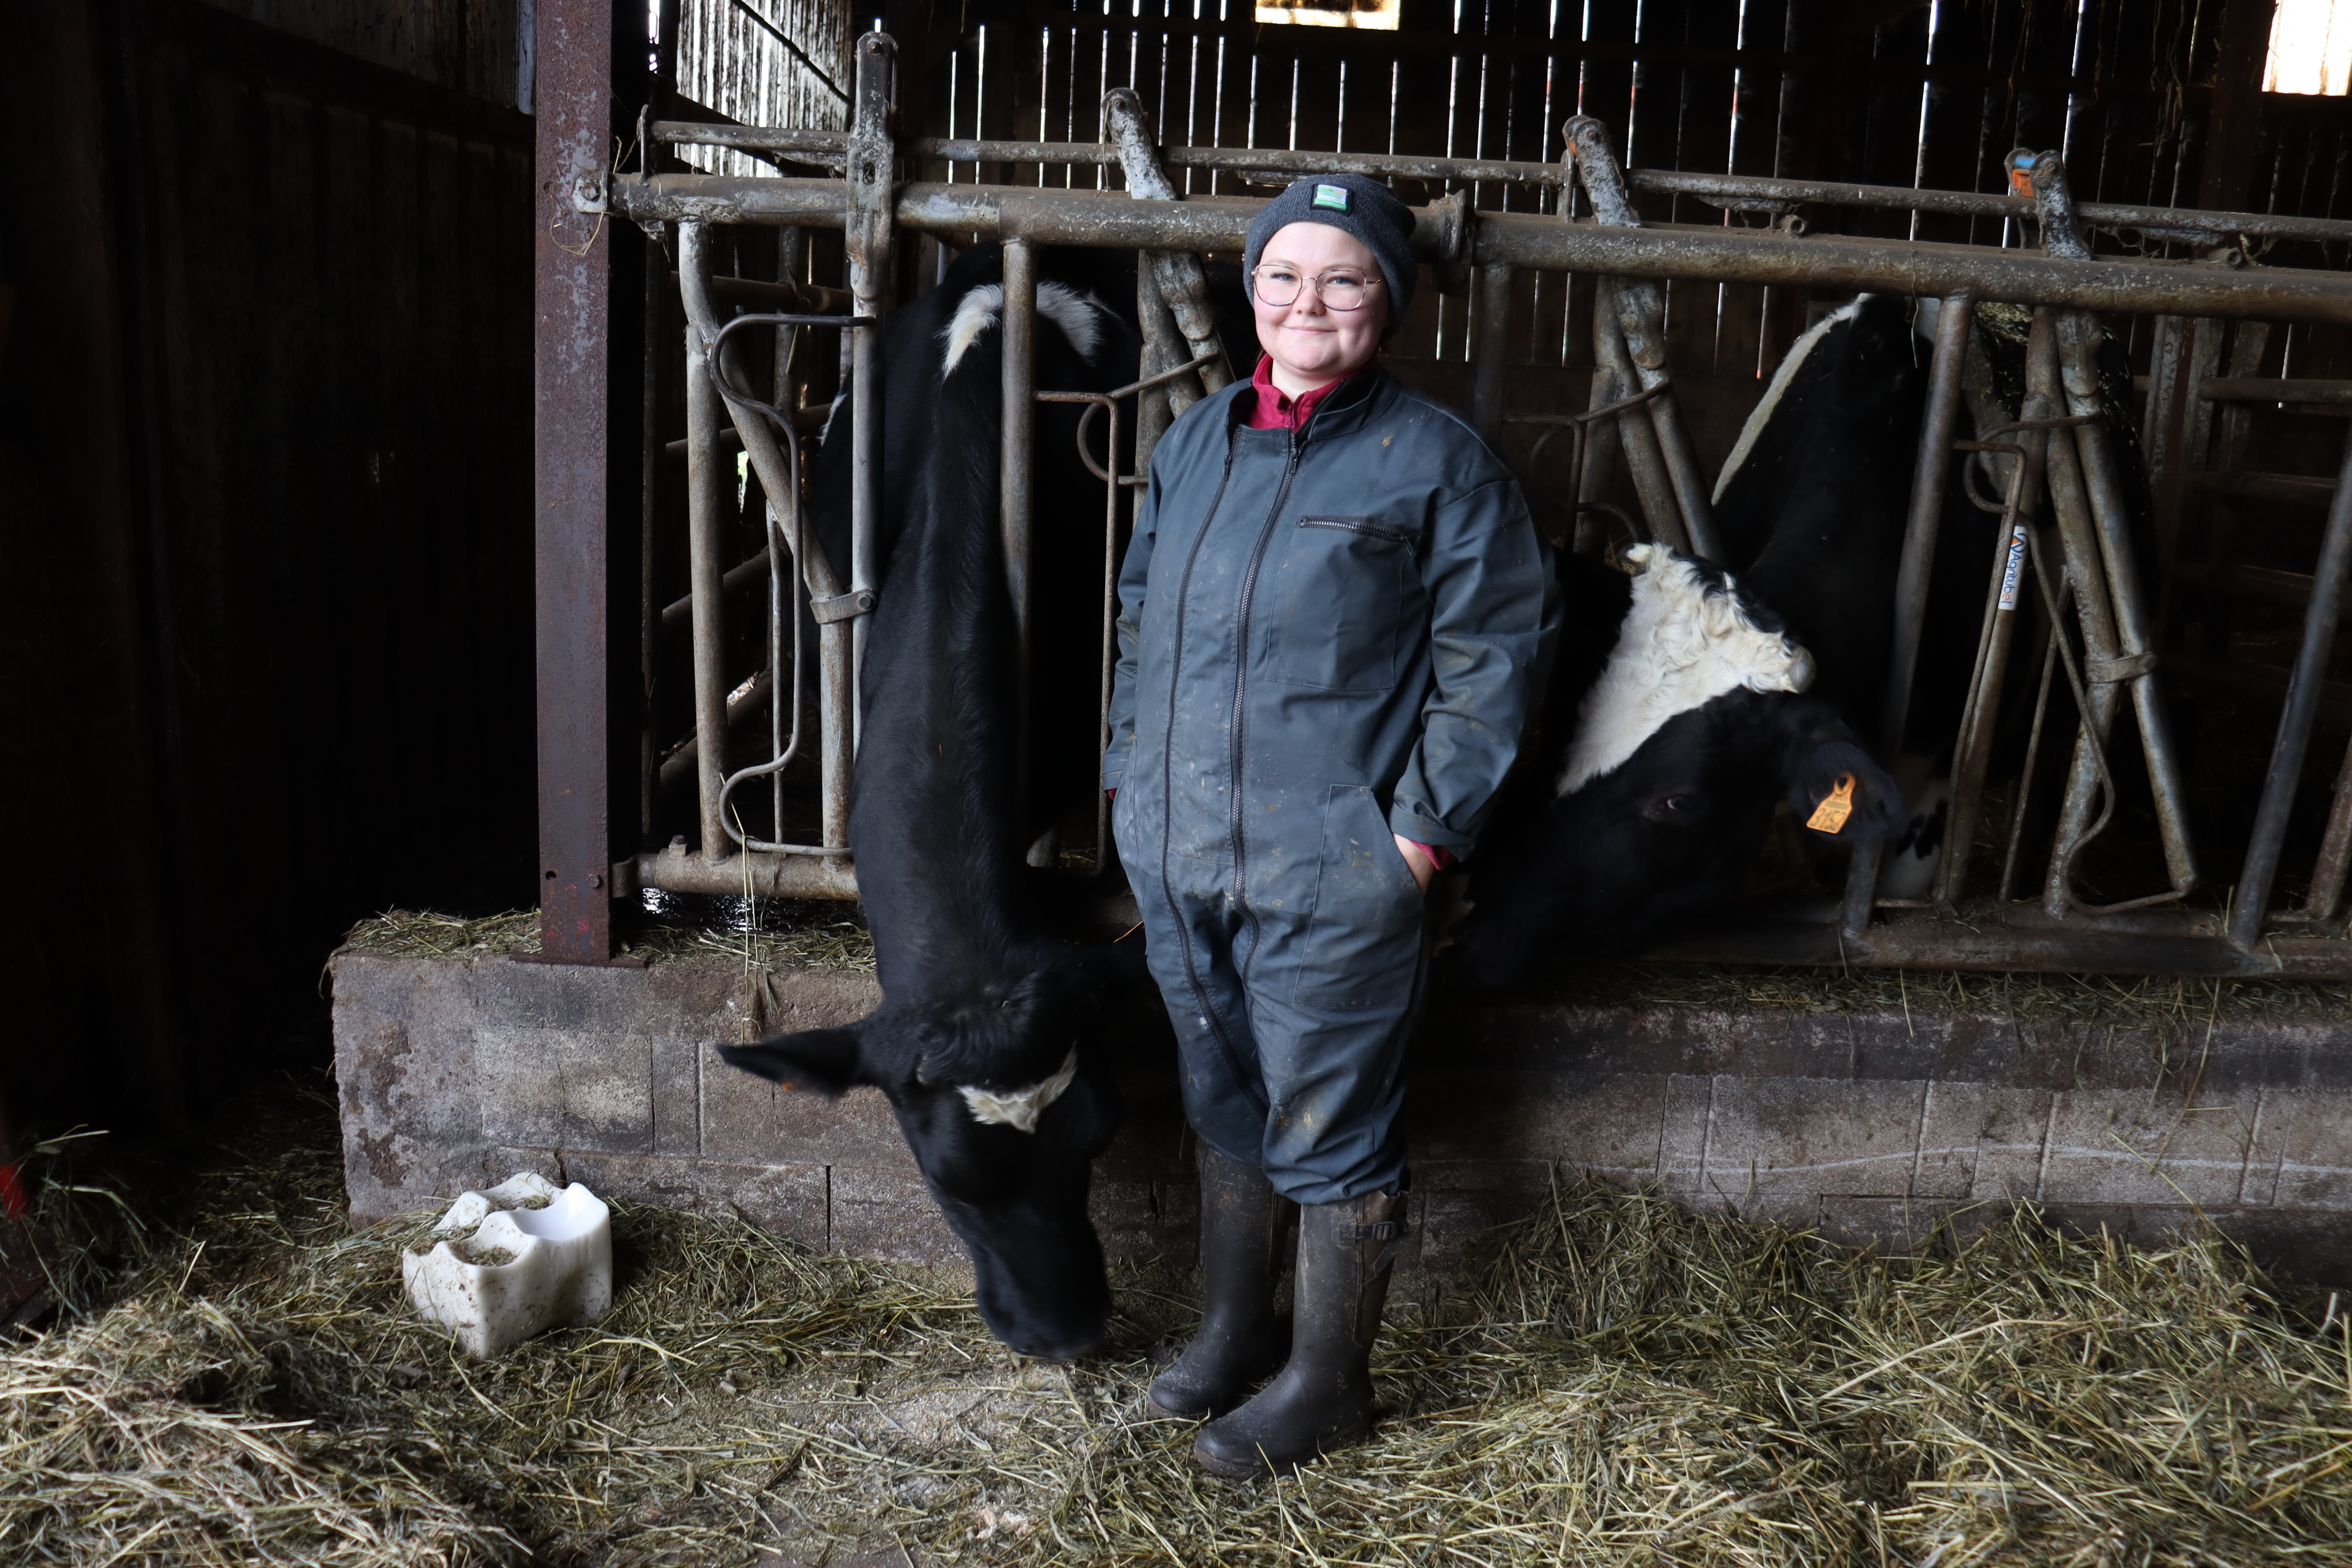  Camille, 19 ans, ne connaissait rien de l’élevage laitier il y a encore 2 ans. Après un CAP et un TEA en MFR, elle apprend le métier grâce à l’apprentissage. ©Marion Falibois